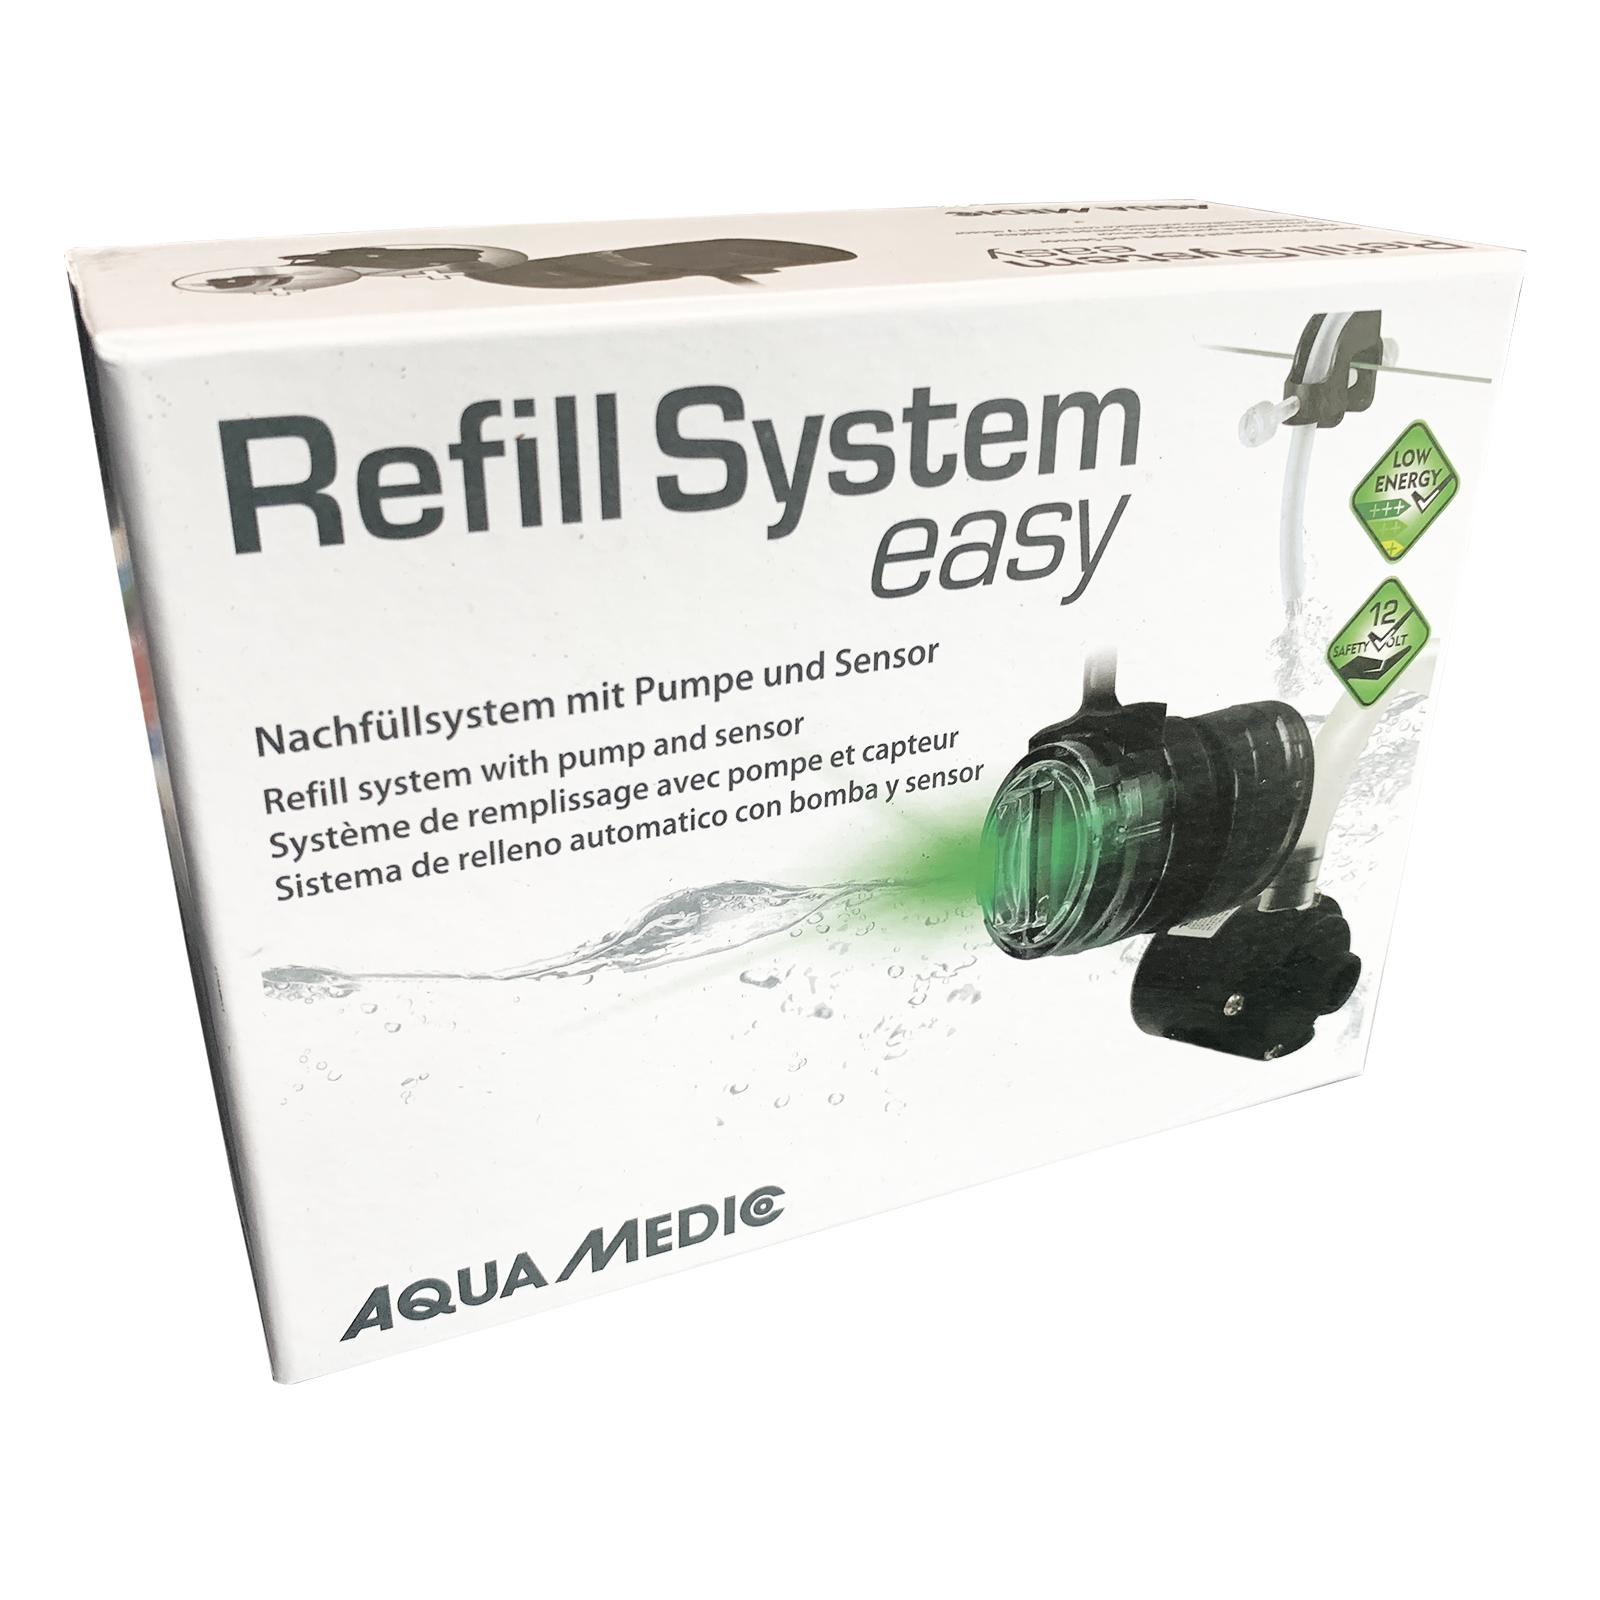 Refill System easy Aqua Medic 